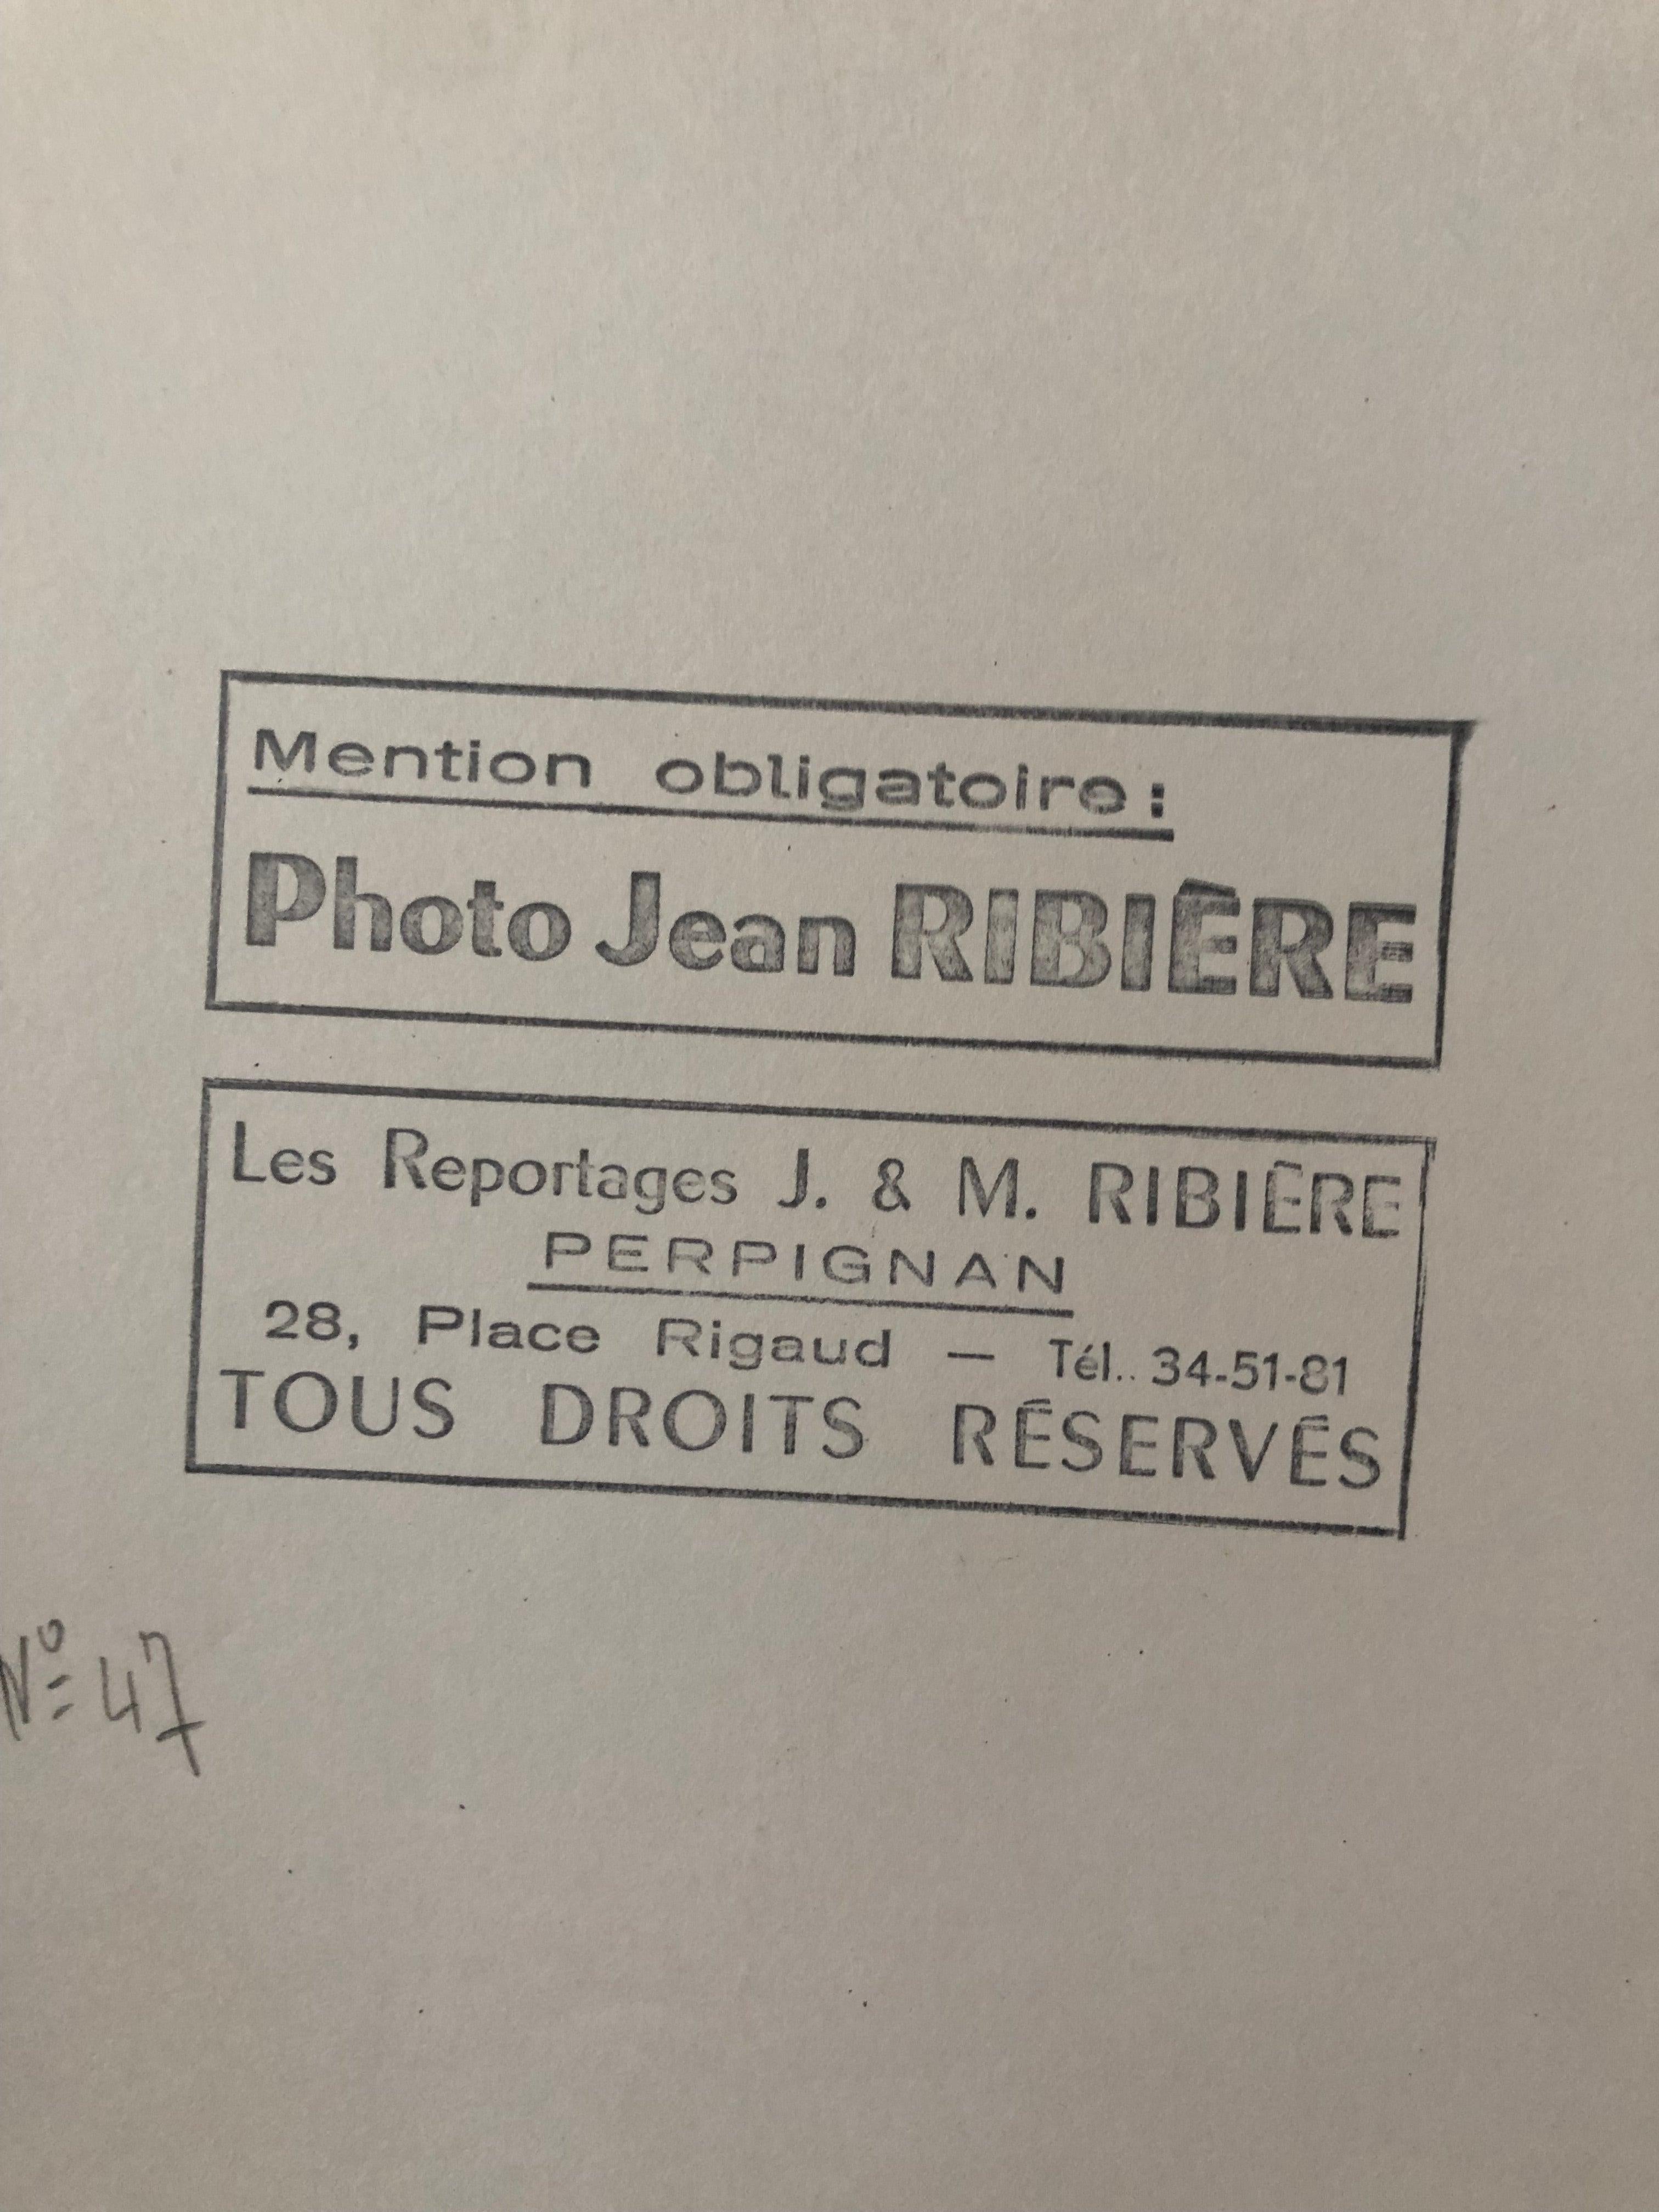 French 1960, La Cité Radieuse, Le Corbusier, Marseille, Jean Ribière